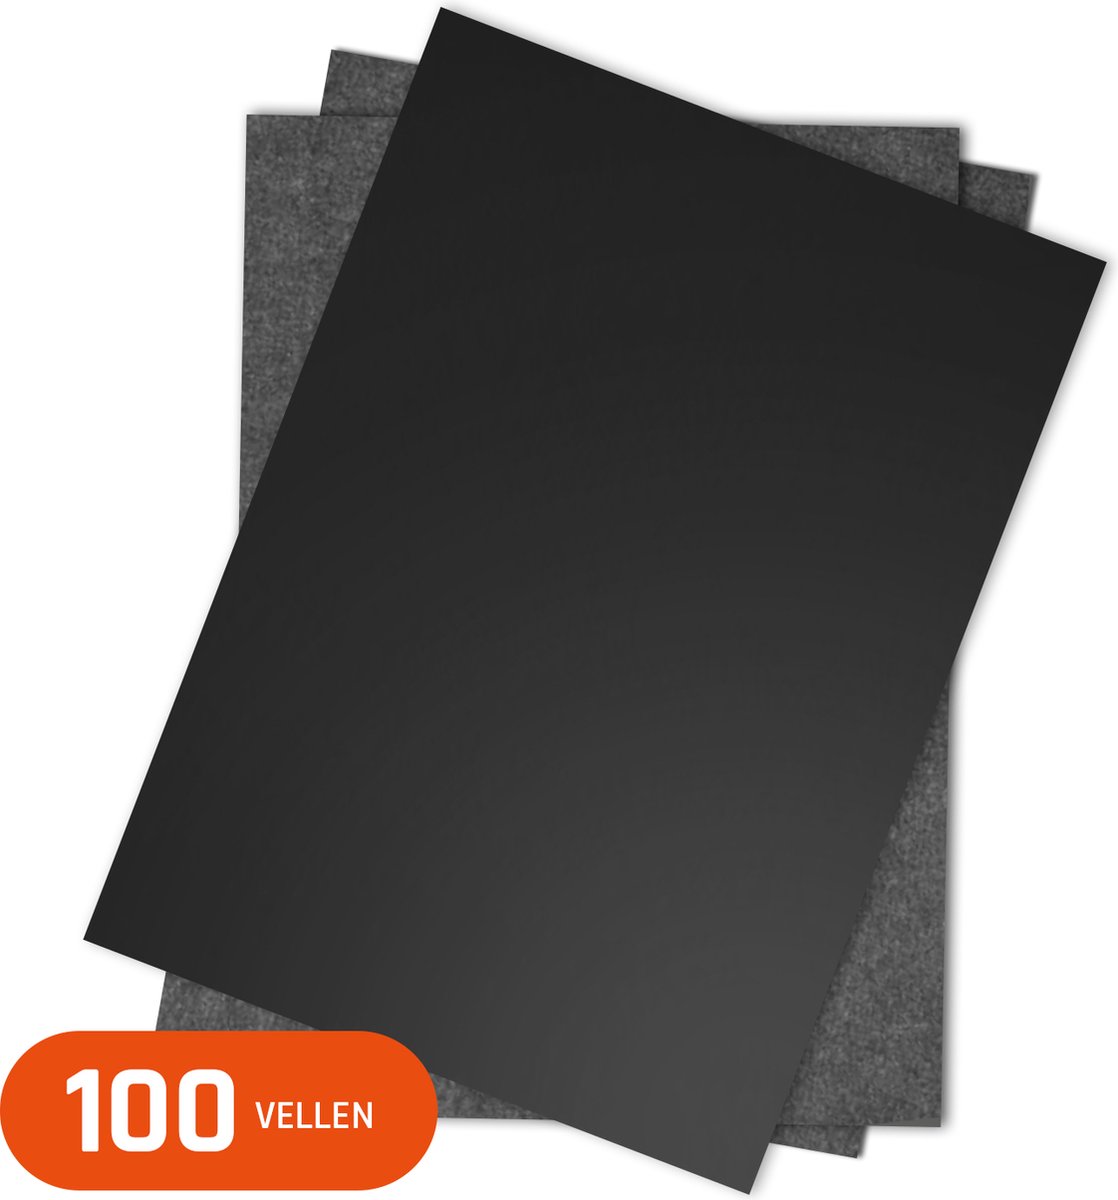 Carbonpapier voor hobby en knutselen - Overtrekpapier - Grafietpapier - 100 vellen A4 - zwart - Foxoo